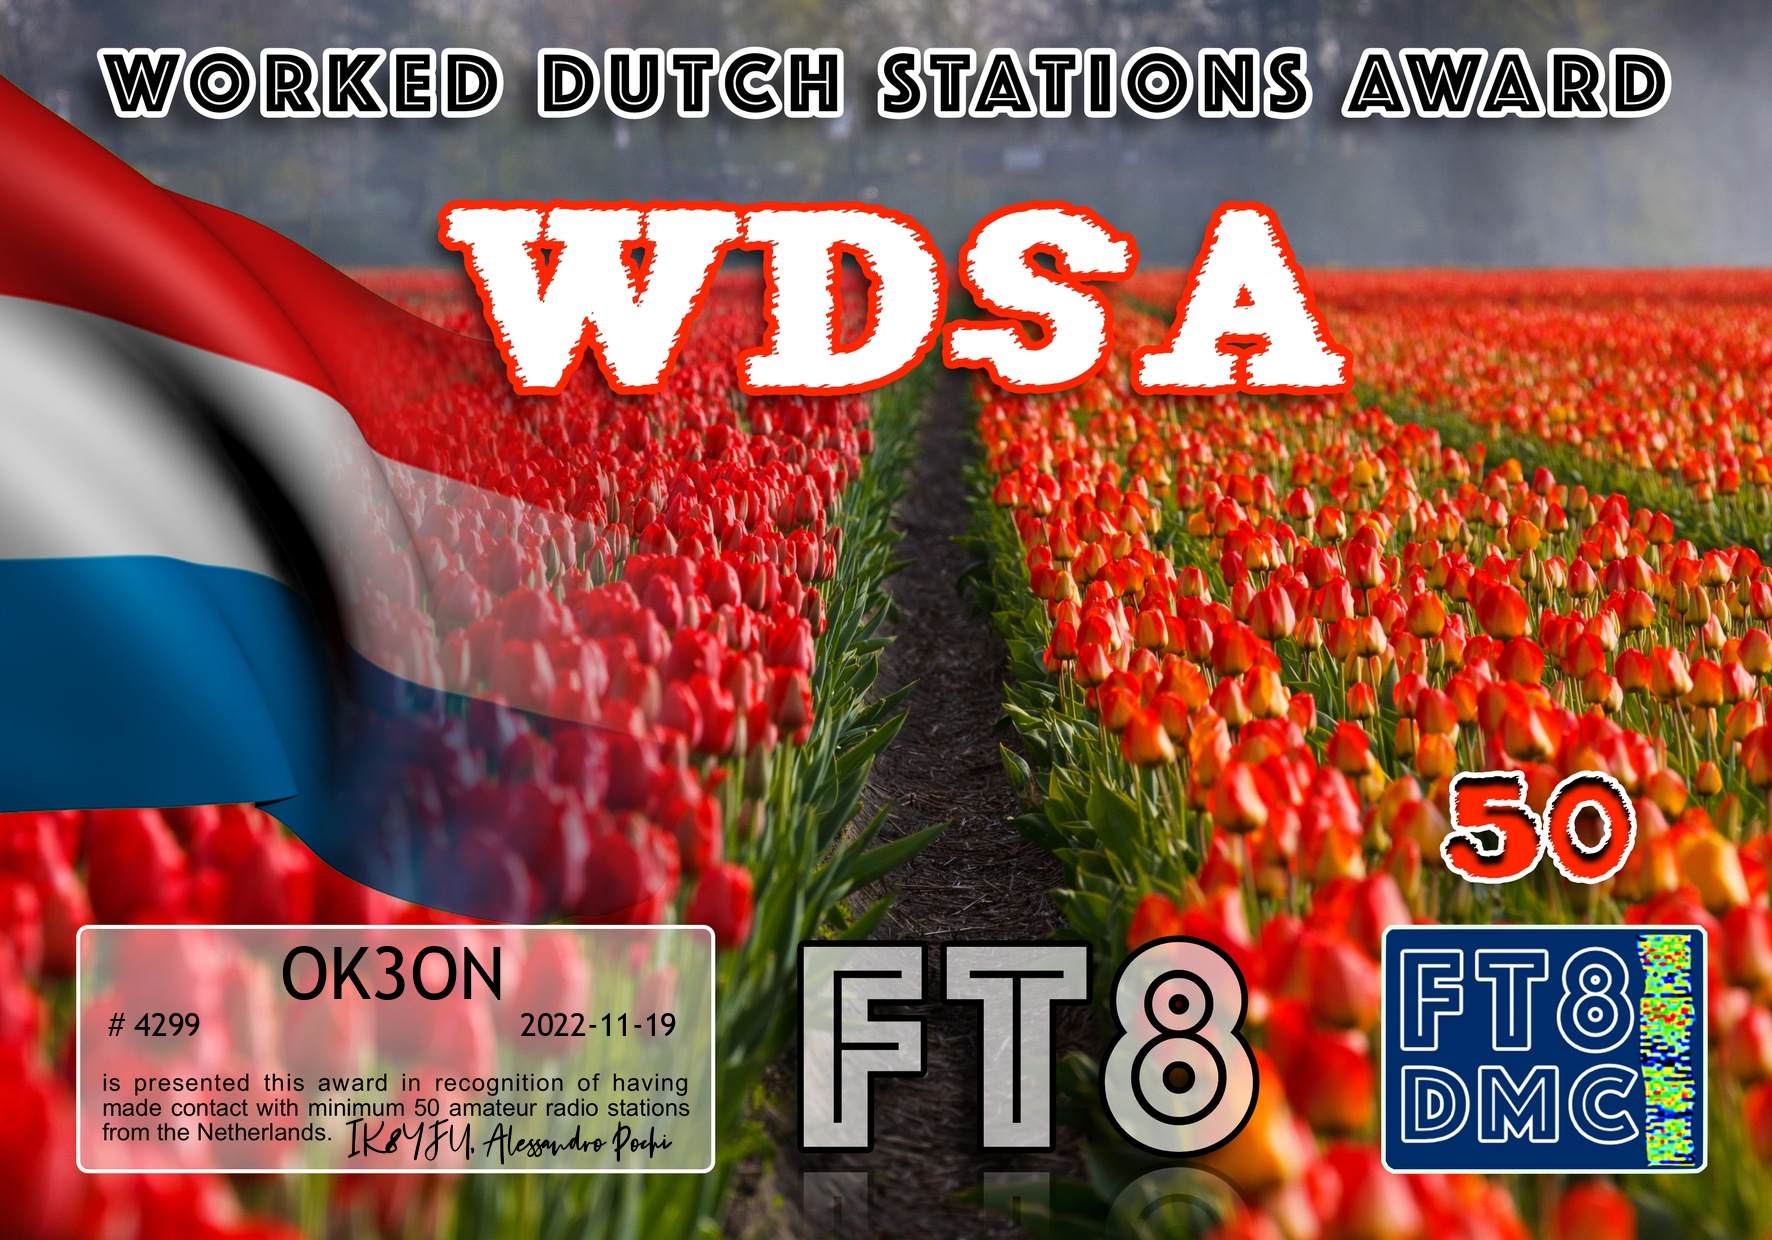 awards/OK3ON-WDSA-I_FT8DMC.jpg